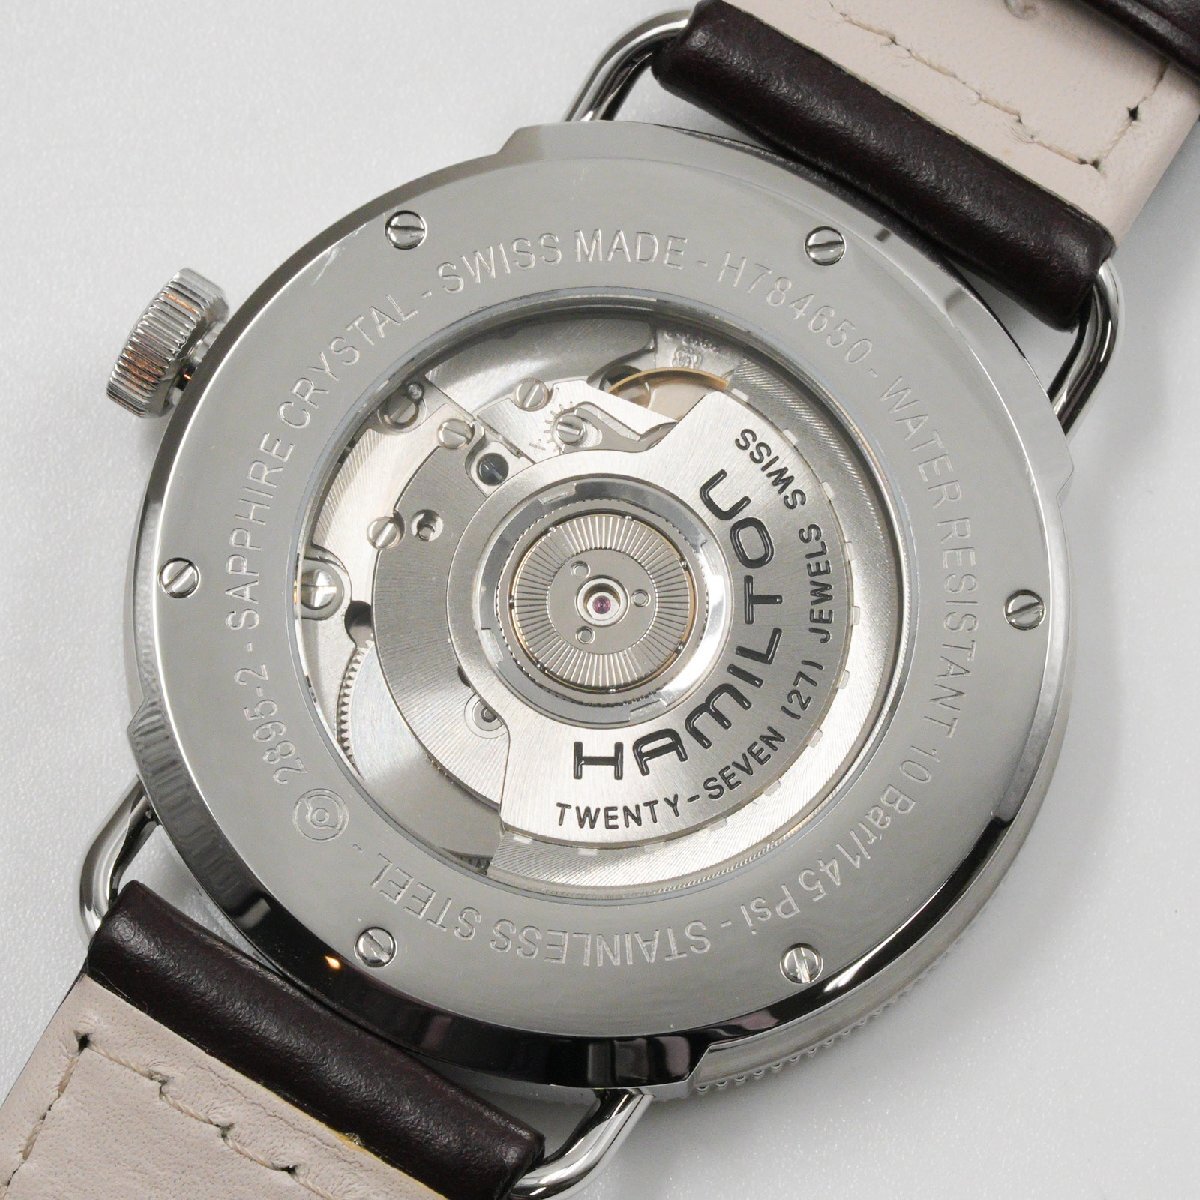 ハミルトン HAMILTON 腕時計 カーキ ネイビー パイオニア H78465553 メンズ 自動巻 中古 美品 [質イコー]_画像4